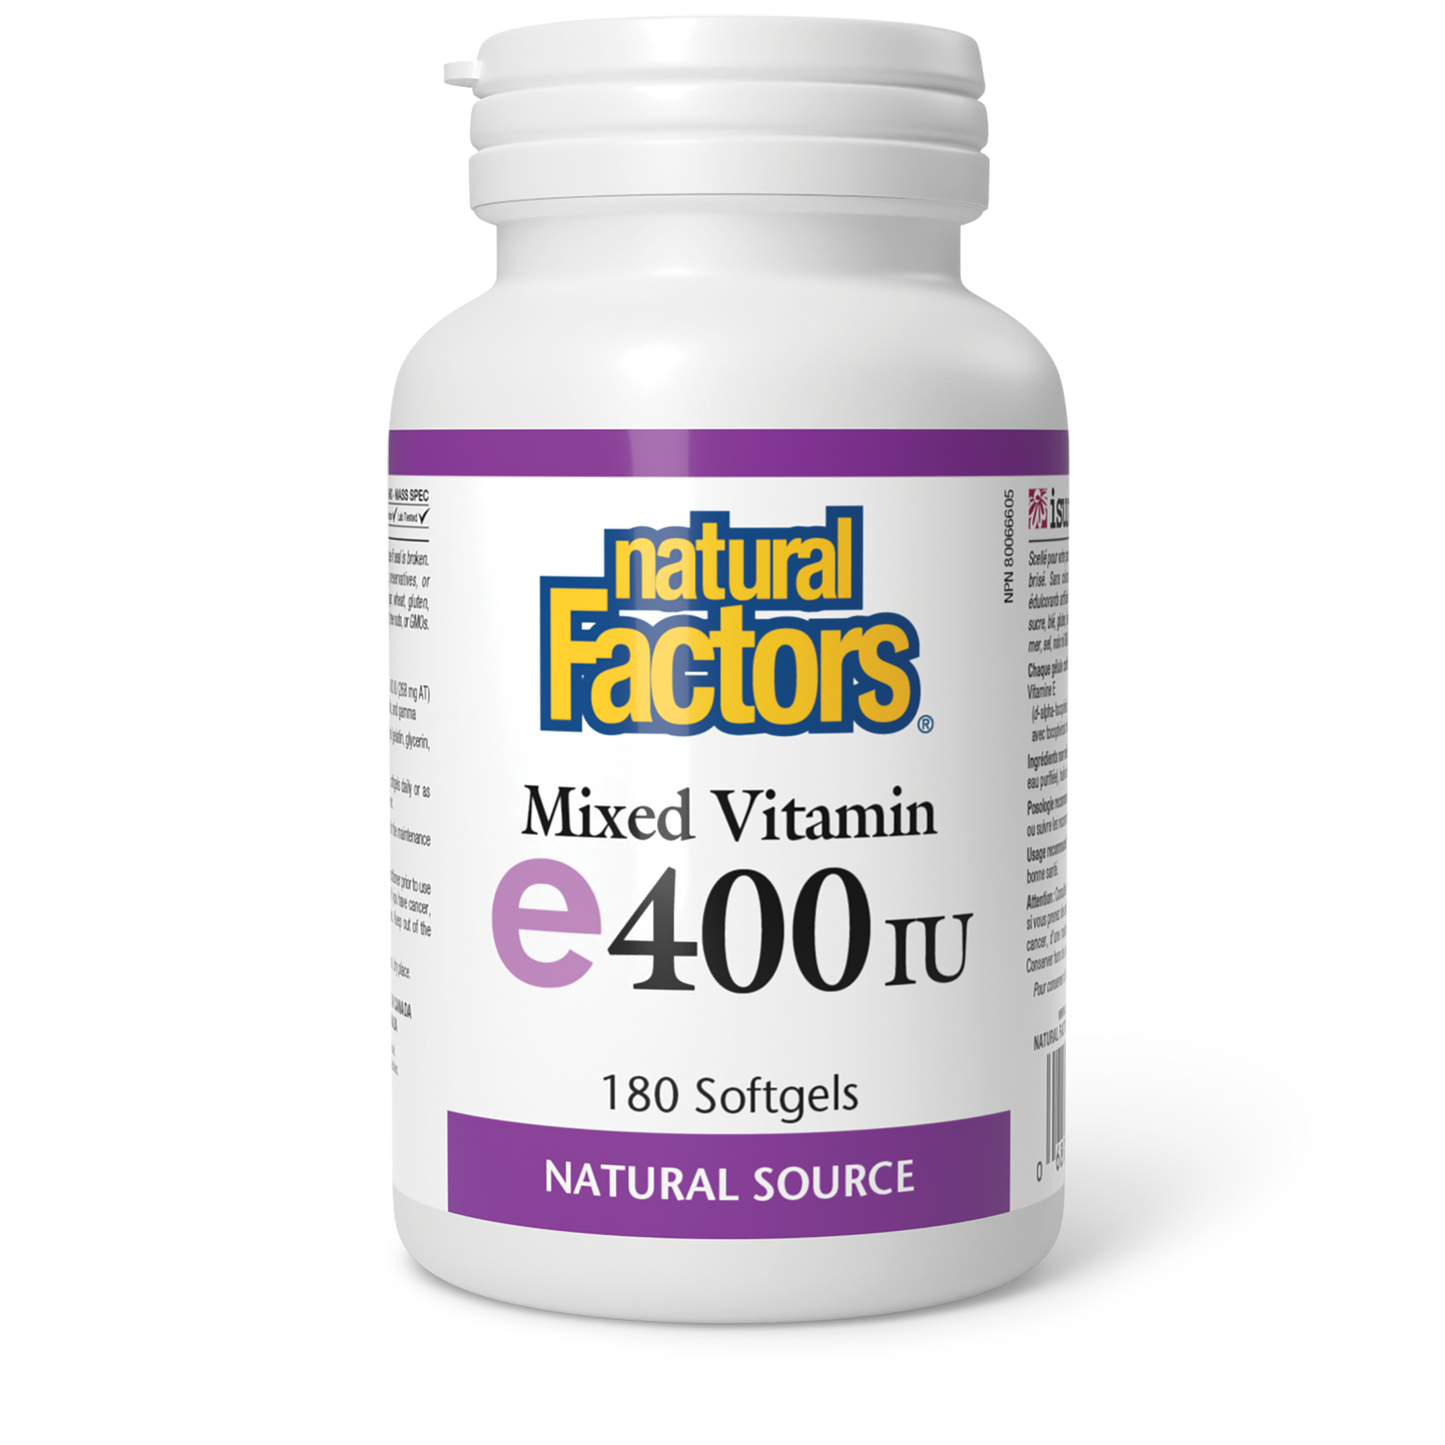 NATURAL FACTORS E400IU 180SG